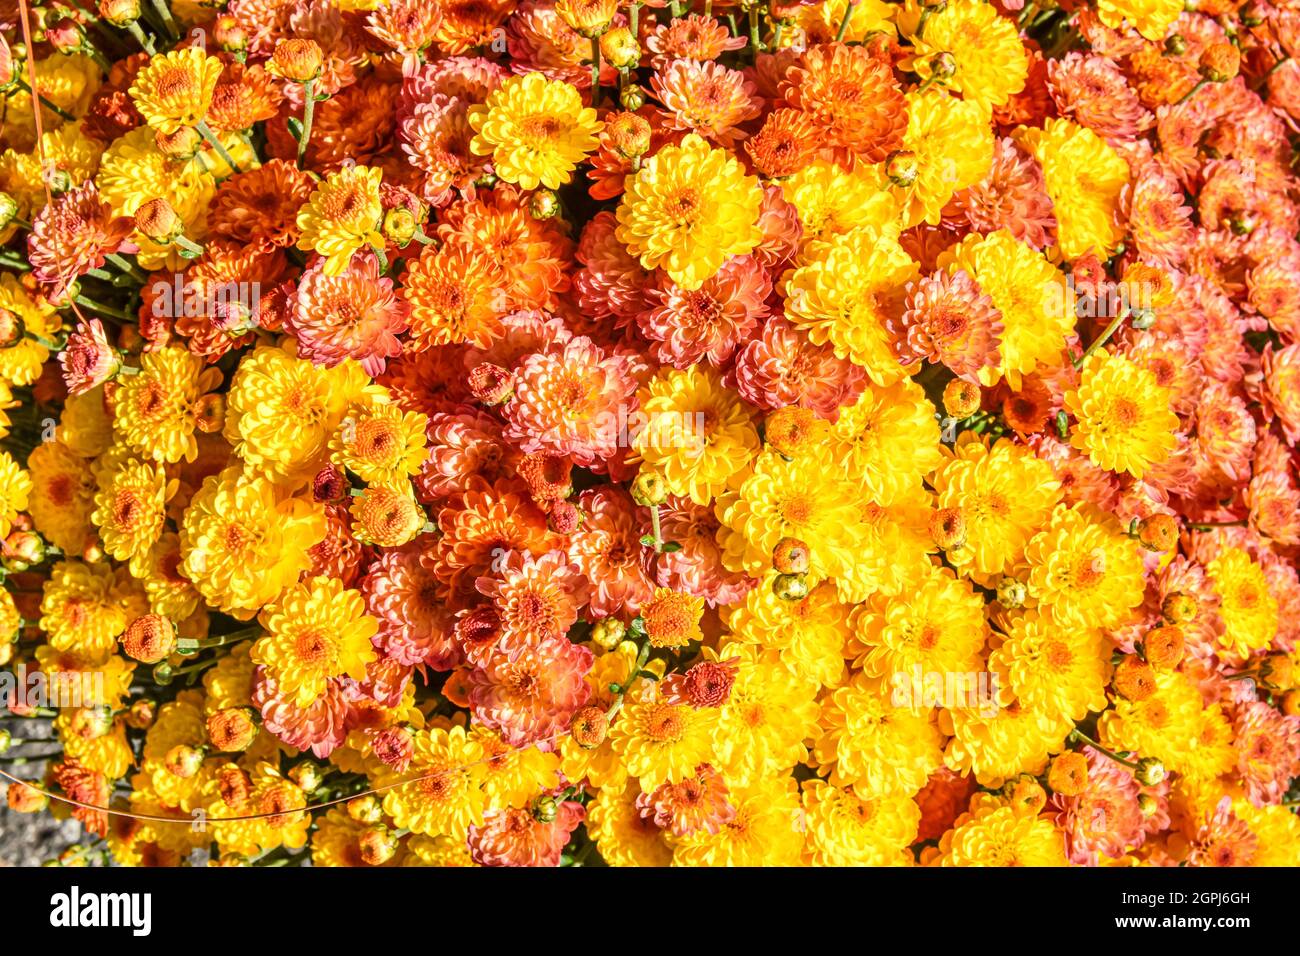 Mamans colorées jaune, orange et rose pour le fond floral. Gros plan. Banque D'Images